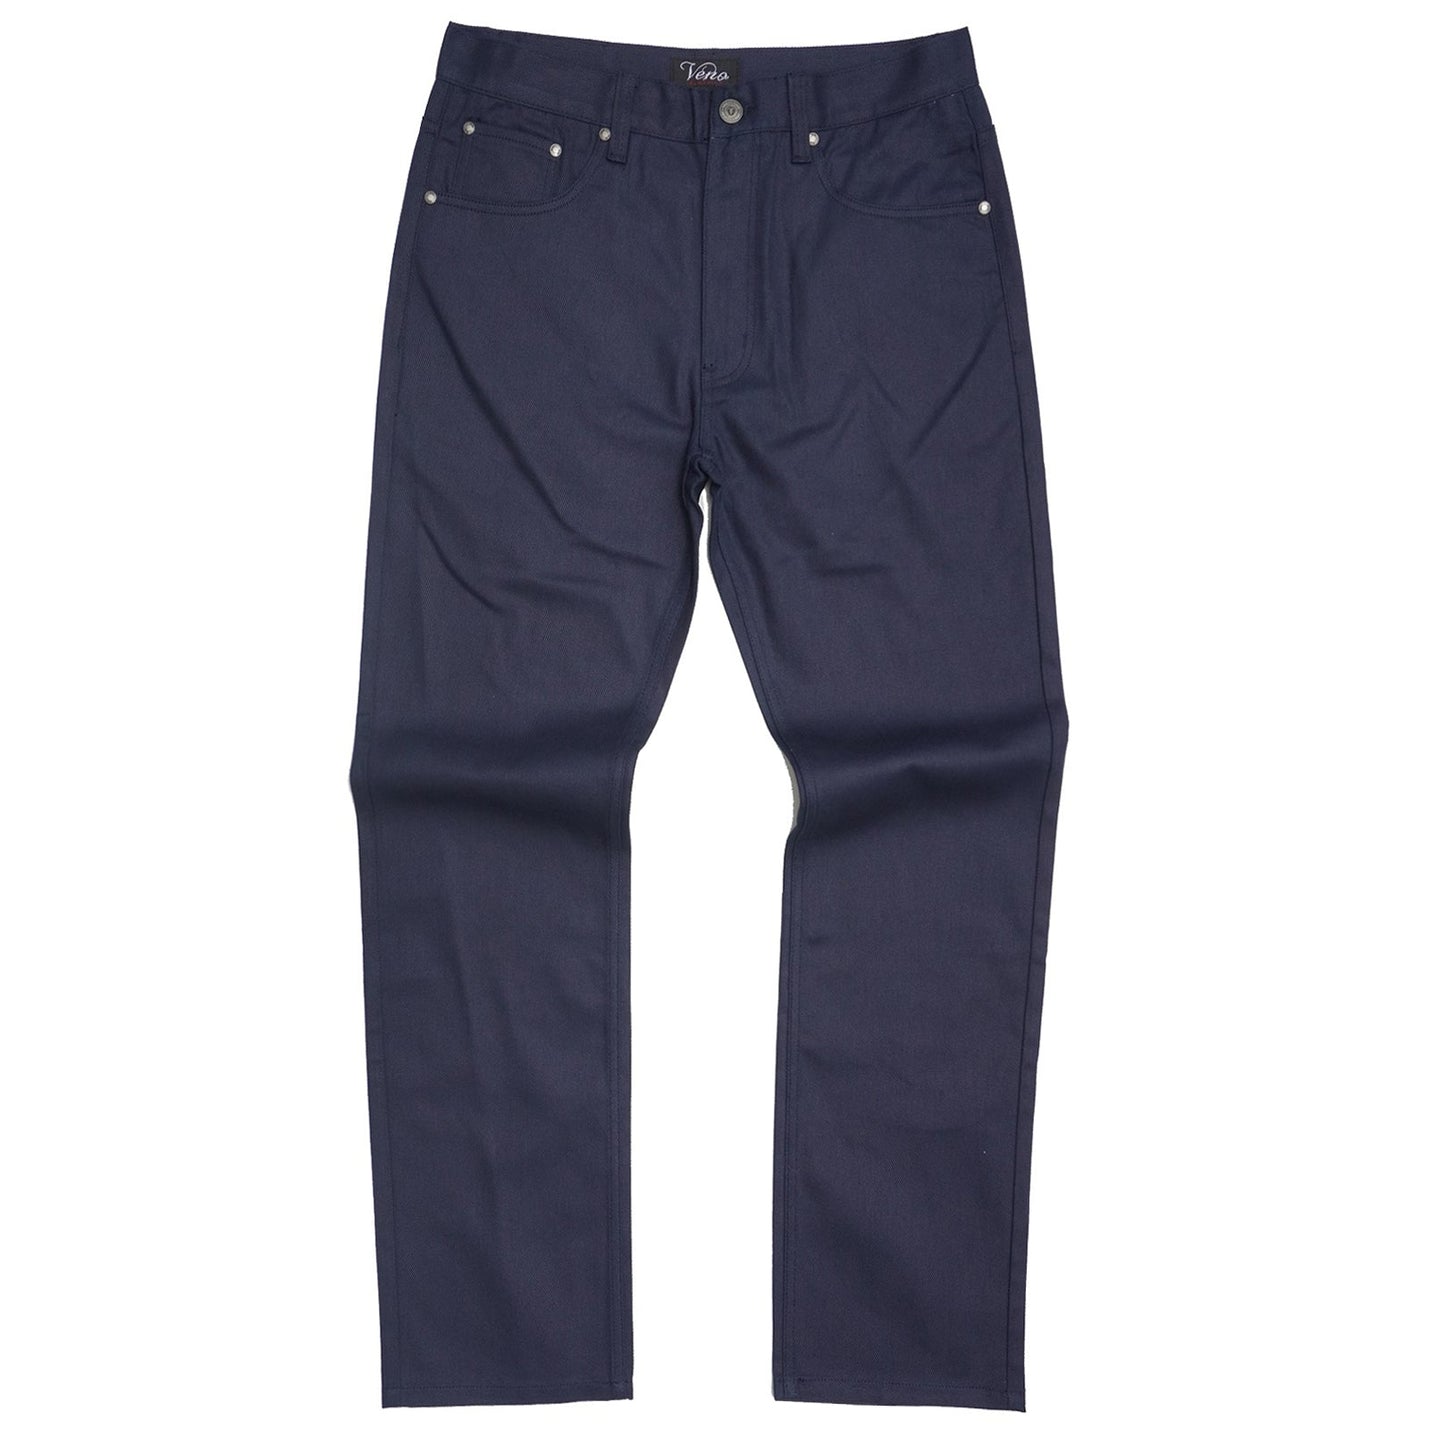 VENO Twill Denim Jeans - Navy (V1761)